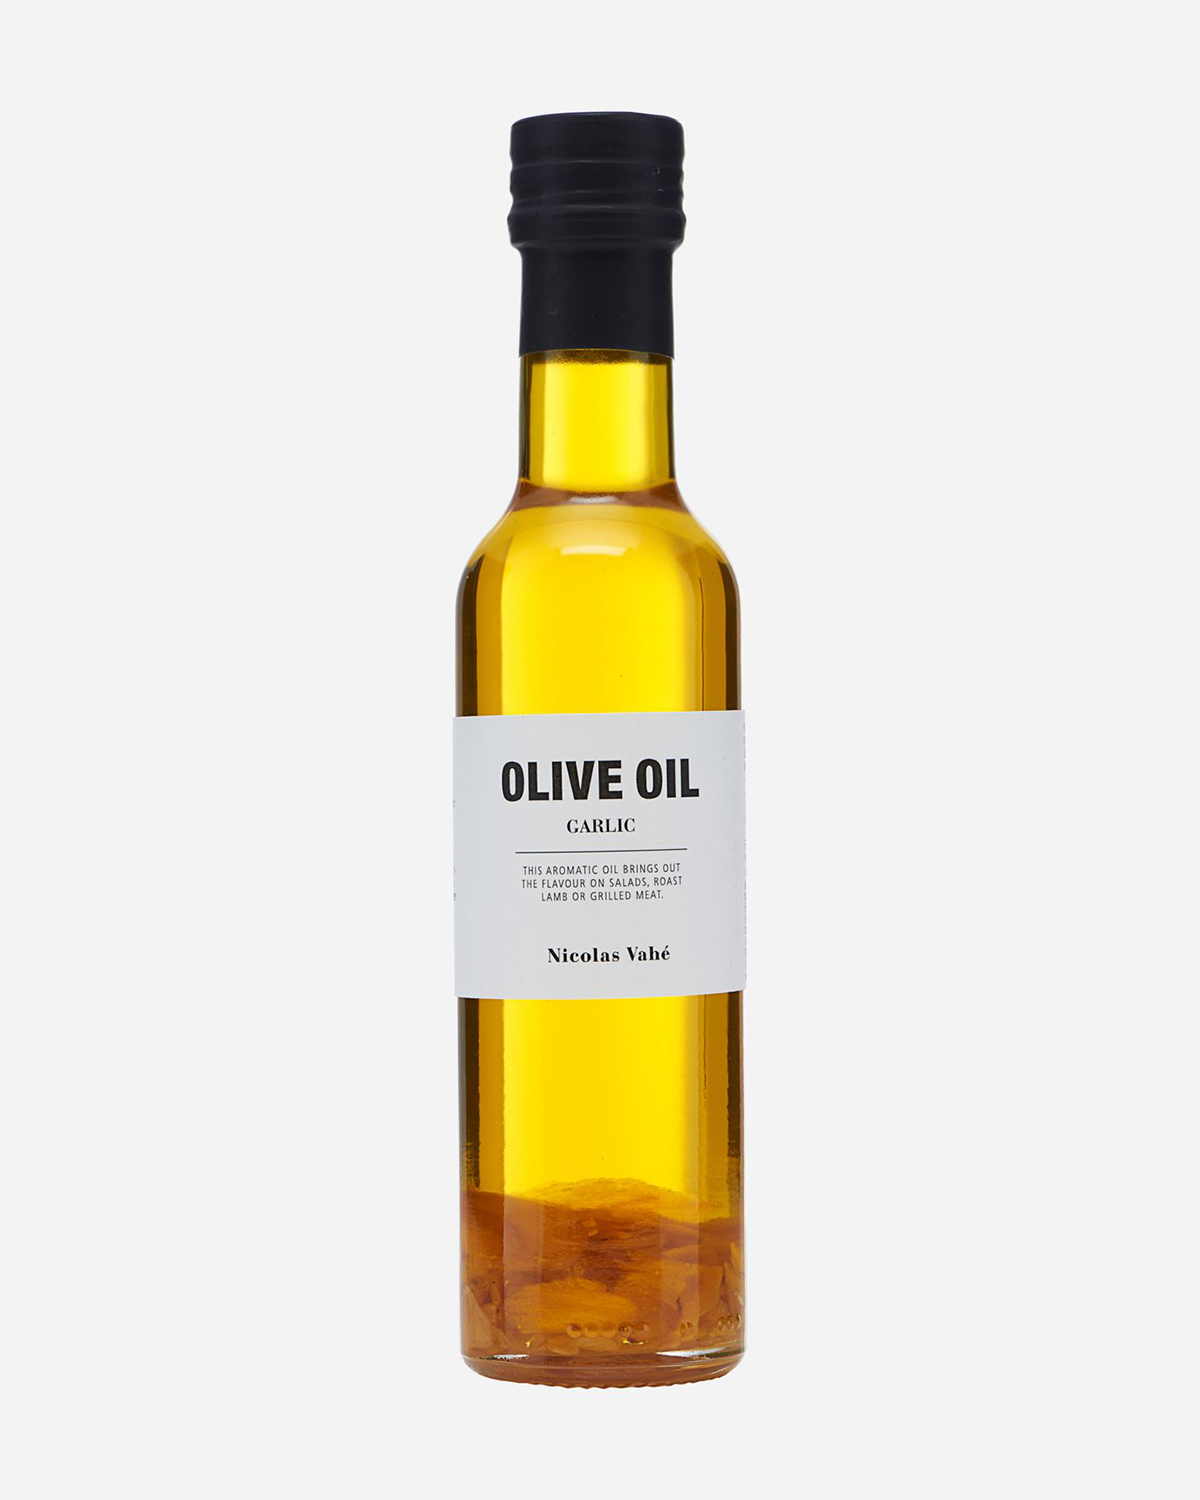 Olive oil, Garlic, 25 cl.